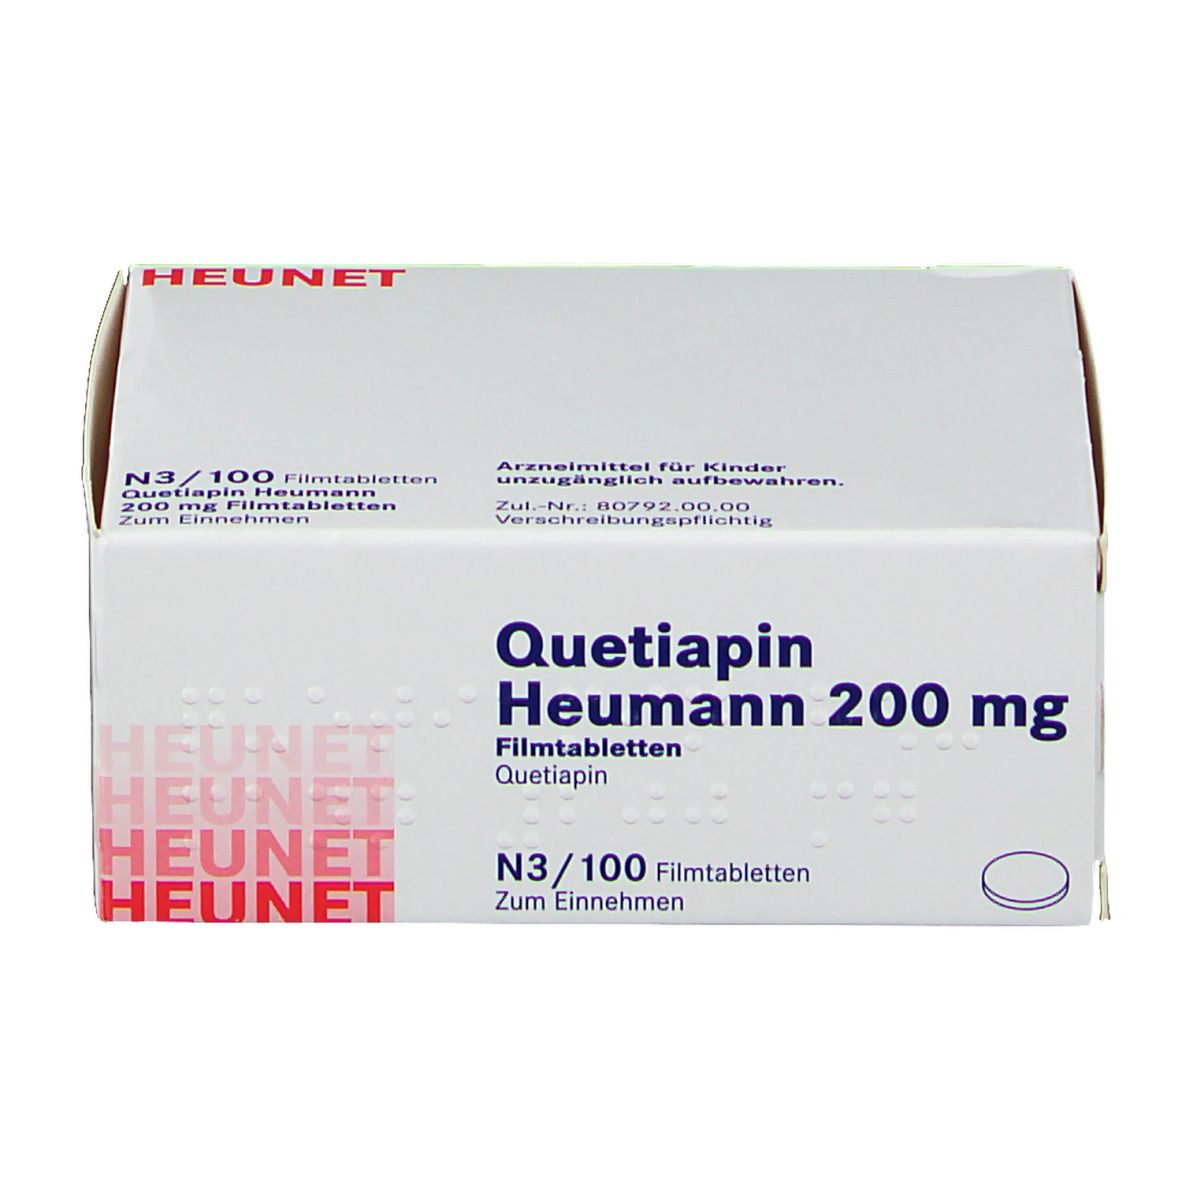 Quetiapin Heumann 200 mg